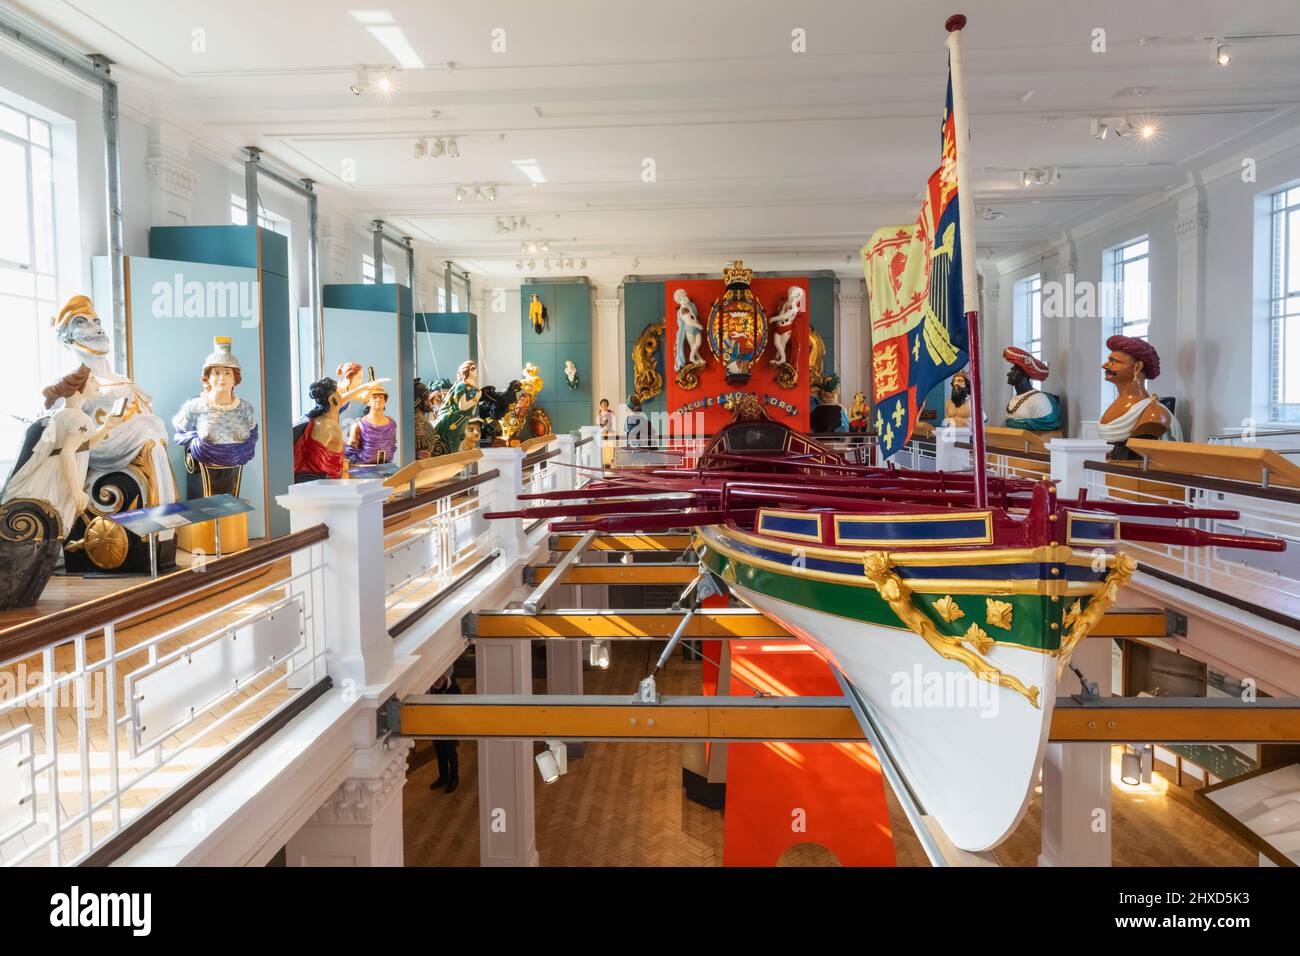 Angleterre, Hampshire, Portsmouth, chantier naval historique de Portsmouth, la Sir Donald Gosling Victory Gallery, vue intérieure des figures historiques du navire Banque D'Images